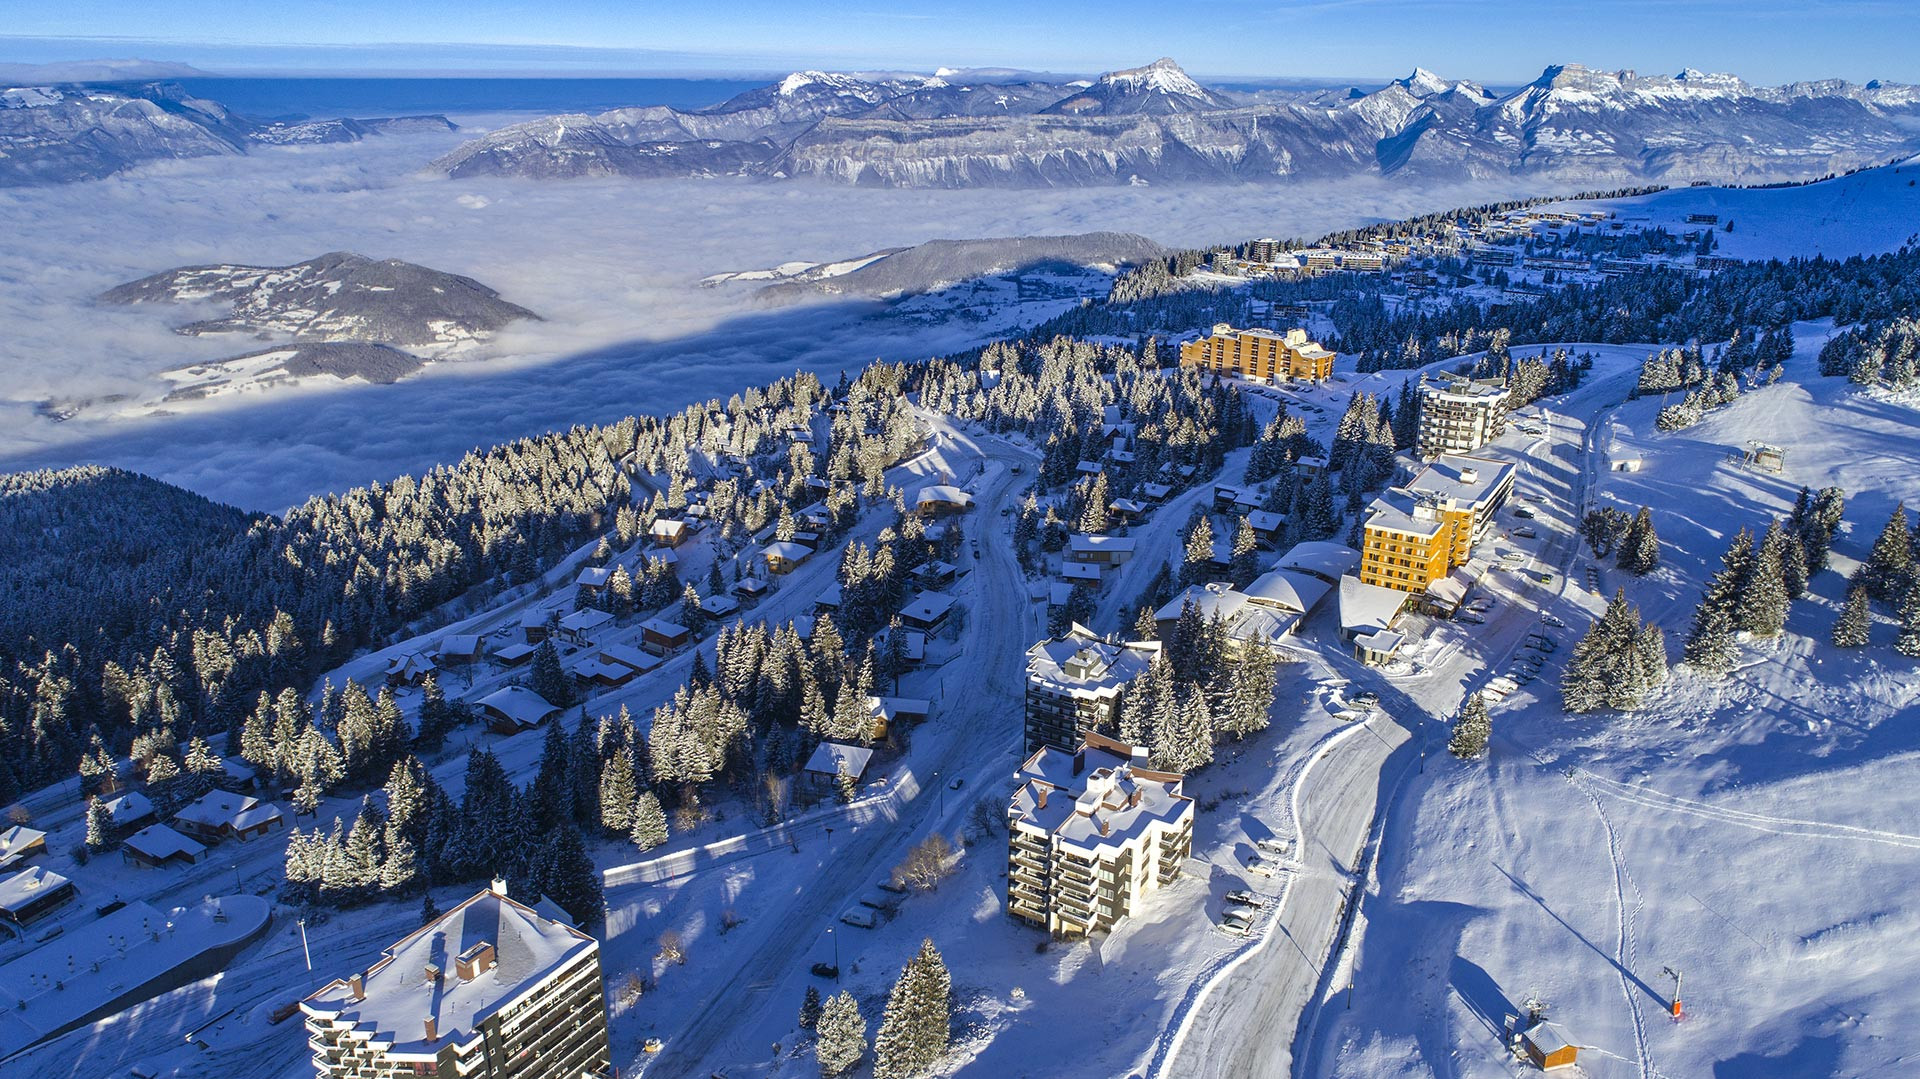 Chamrousse forfait ski télépistes station montagne grenoble isère alpes france